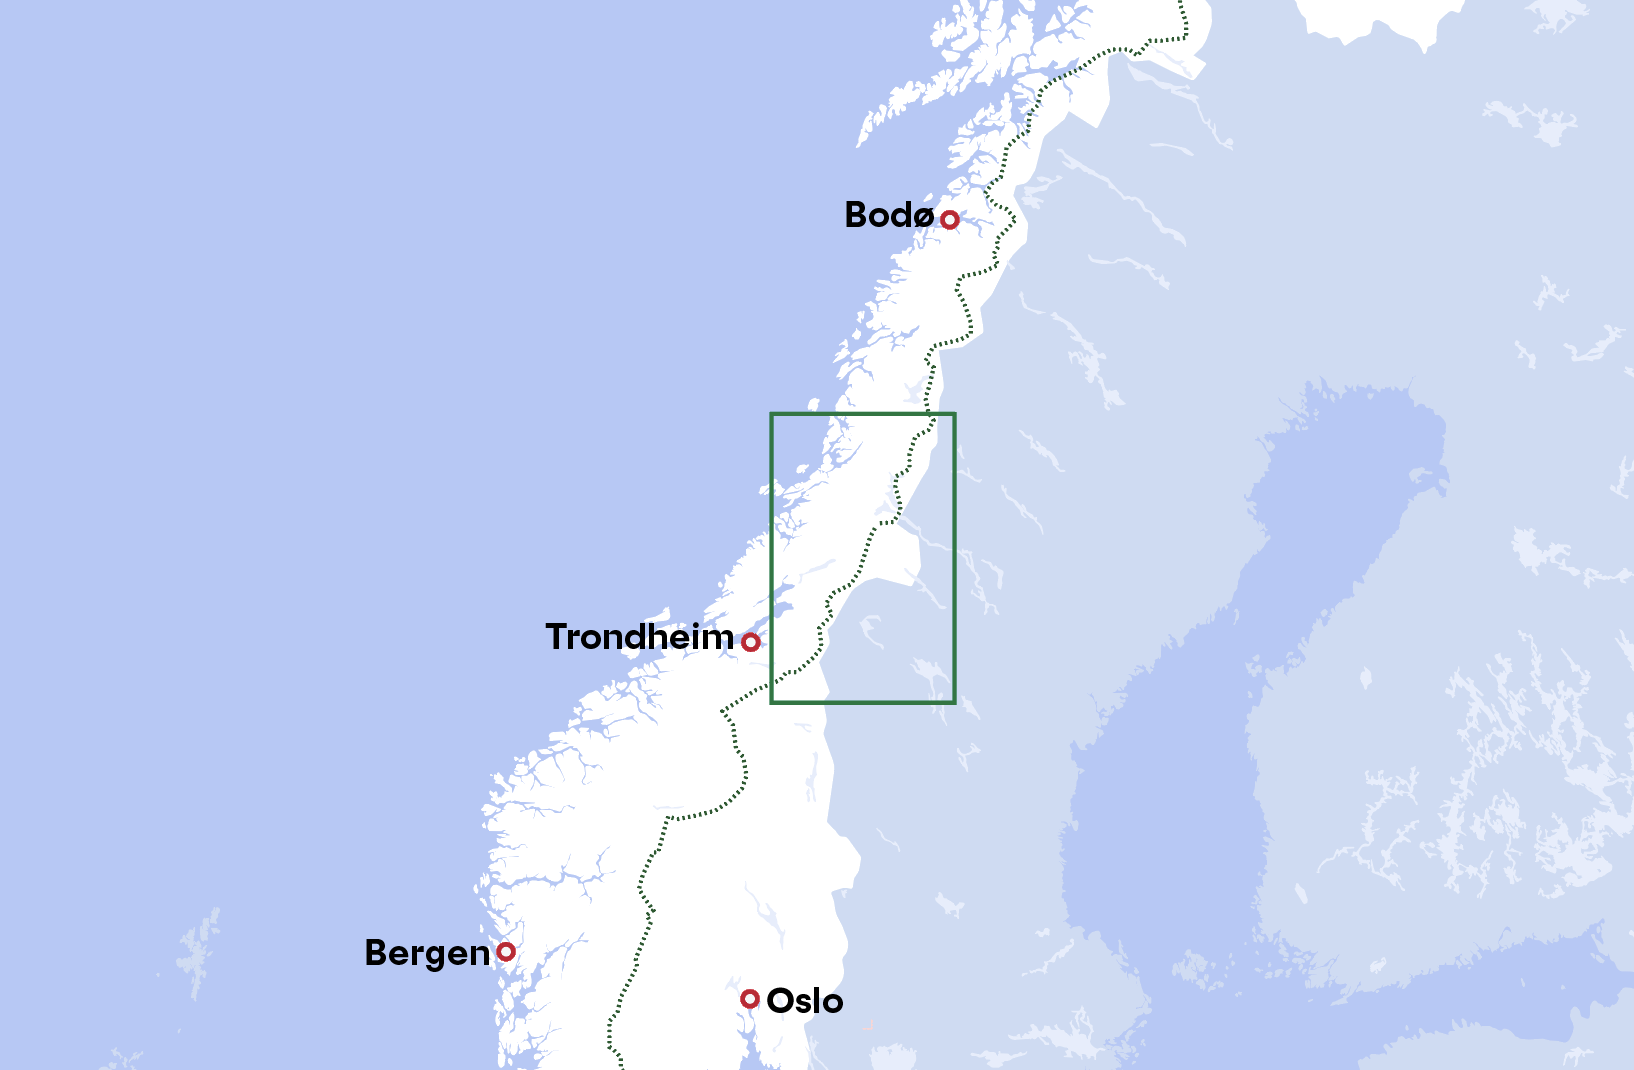 Part 3: Trøndelag